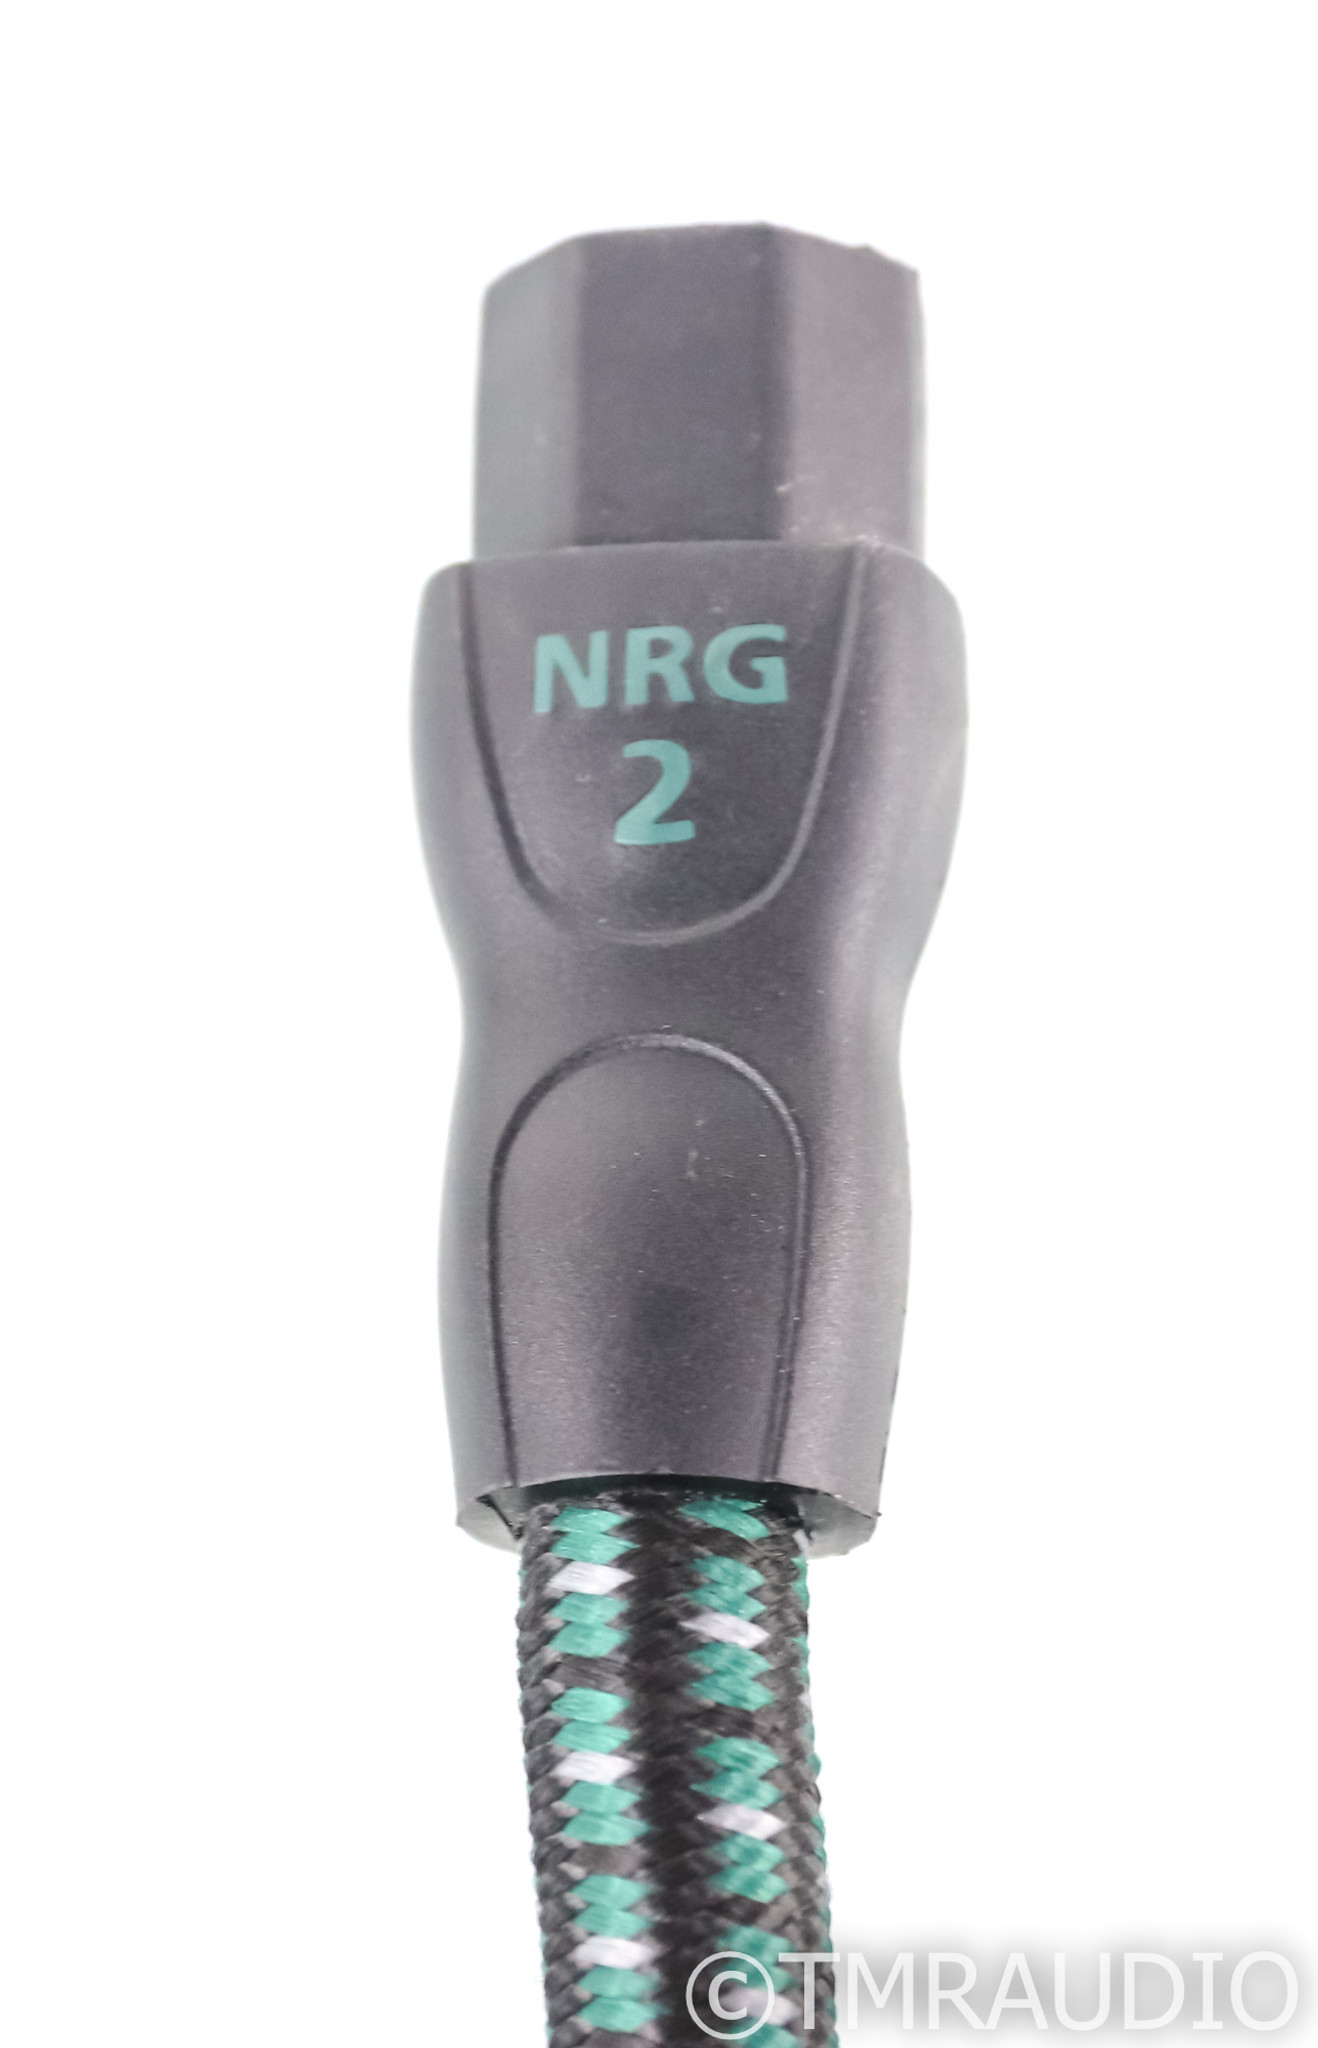 Audioquest NRG Y2 - Câble d'alimentation IEC C7 - La boutique d'Eric